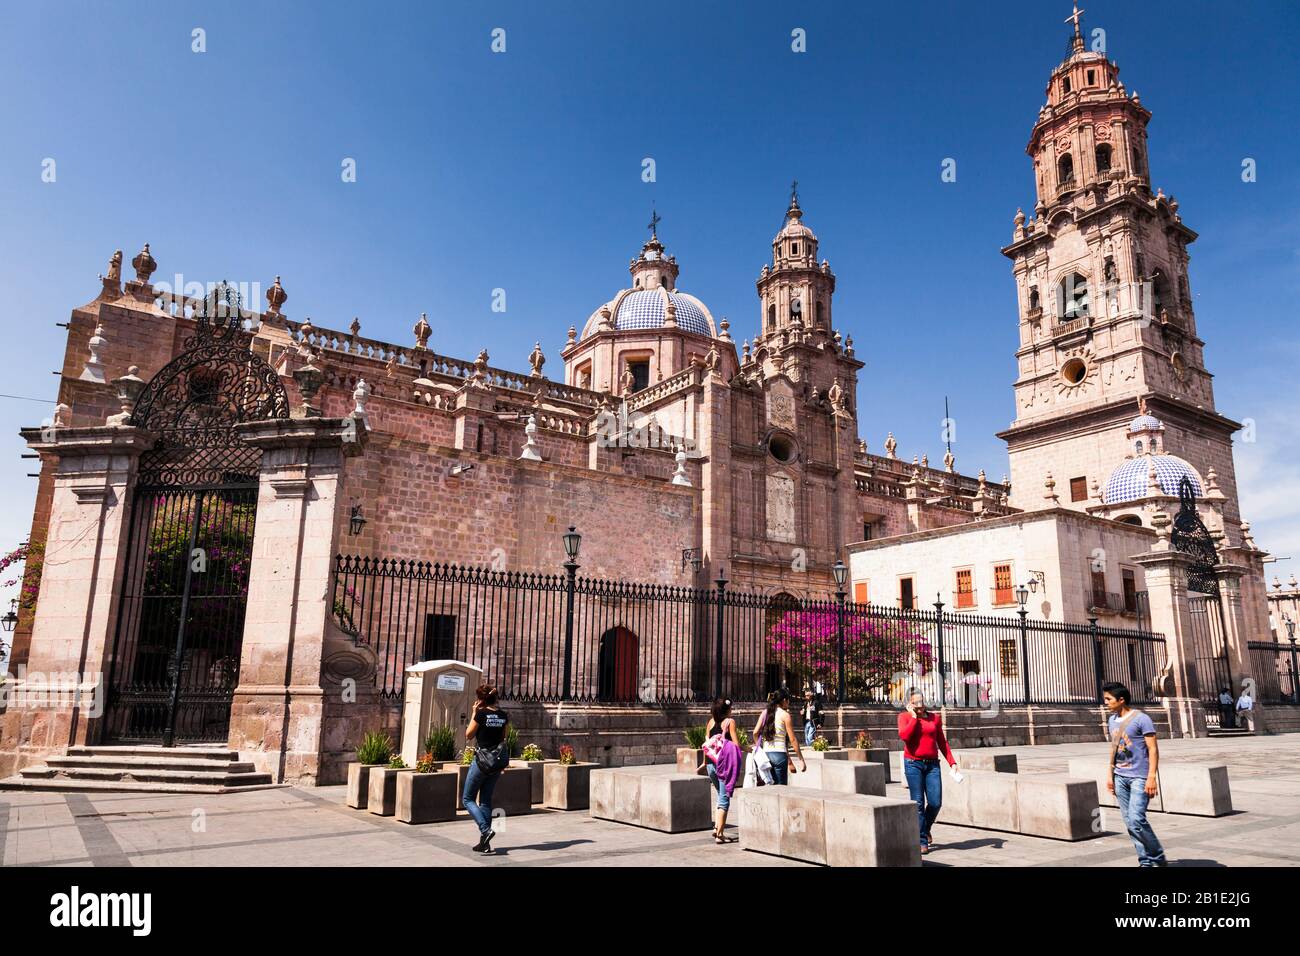 Cathédrale de Morelia, centre historique de Morelia, état de Michoacan, Mexique, Amérique centrale Banque D'Images